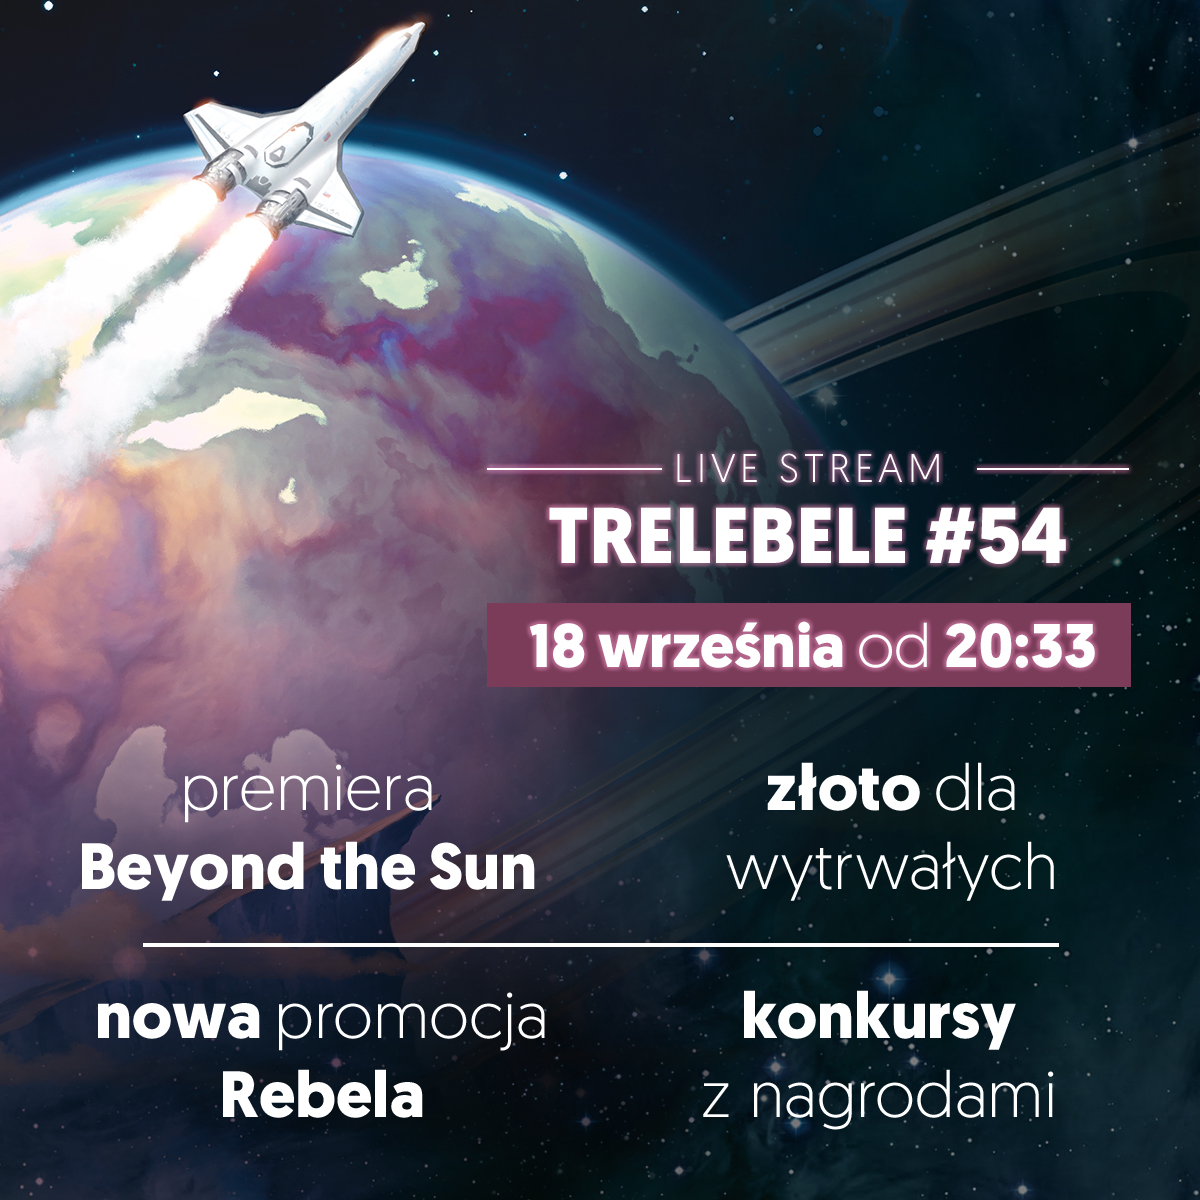 Dziś Trelebele. Premierowo opowiemy o Beyond the sun. Dziś w programie o nowej promocji rebel.pl, która wystartuje 27 września. Będą jak zwykle konkursy i Złoto dla wytrwałych.